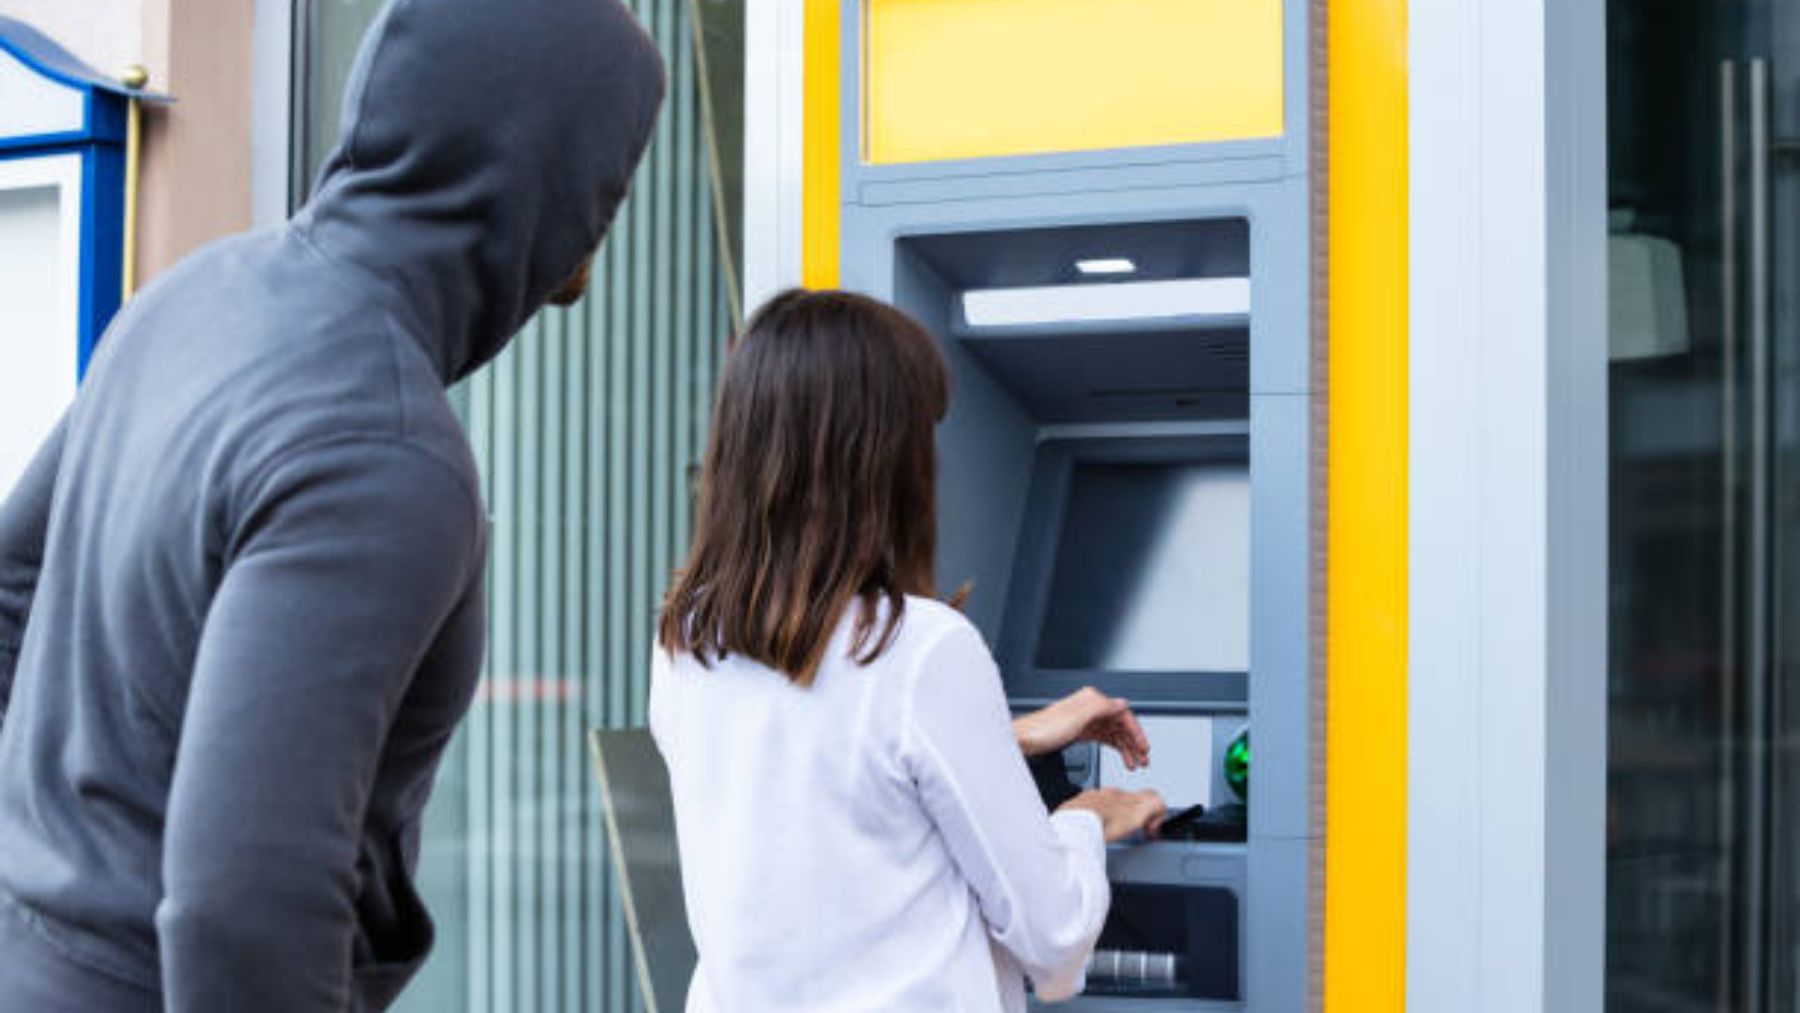 Los mejores trucos para evitar robos en el cajero automático